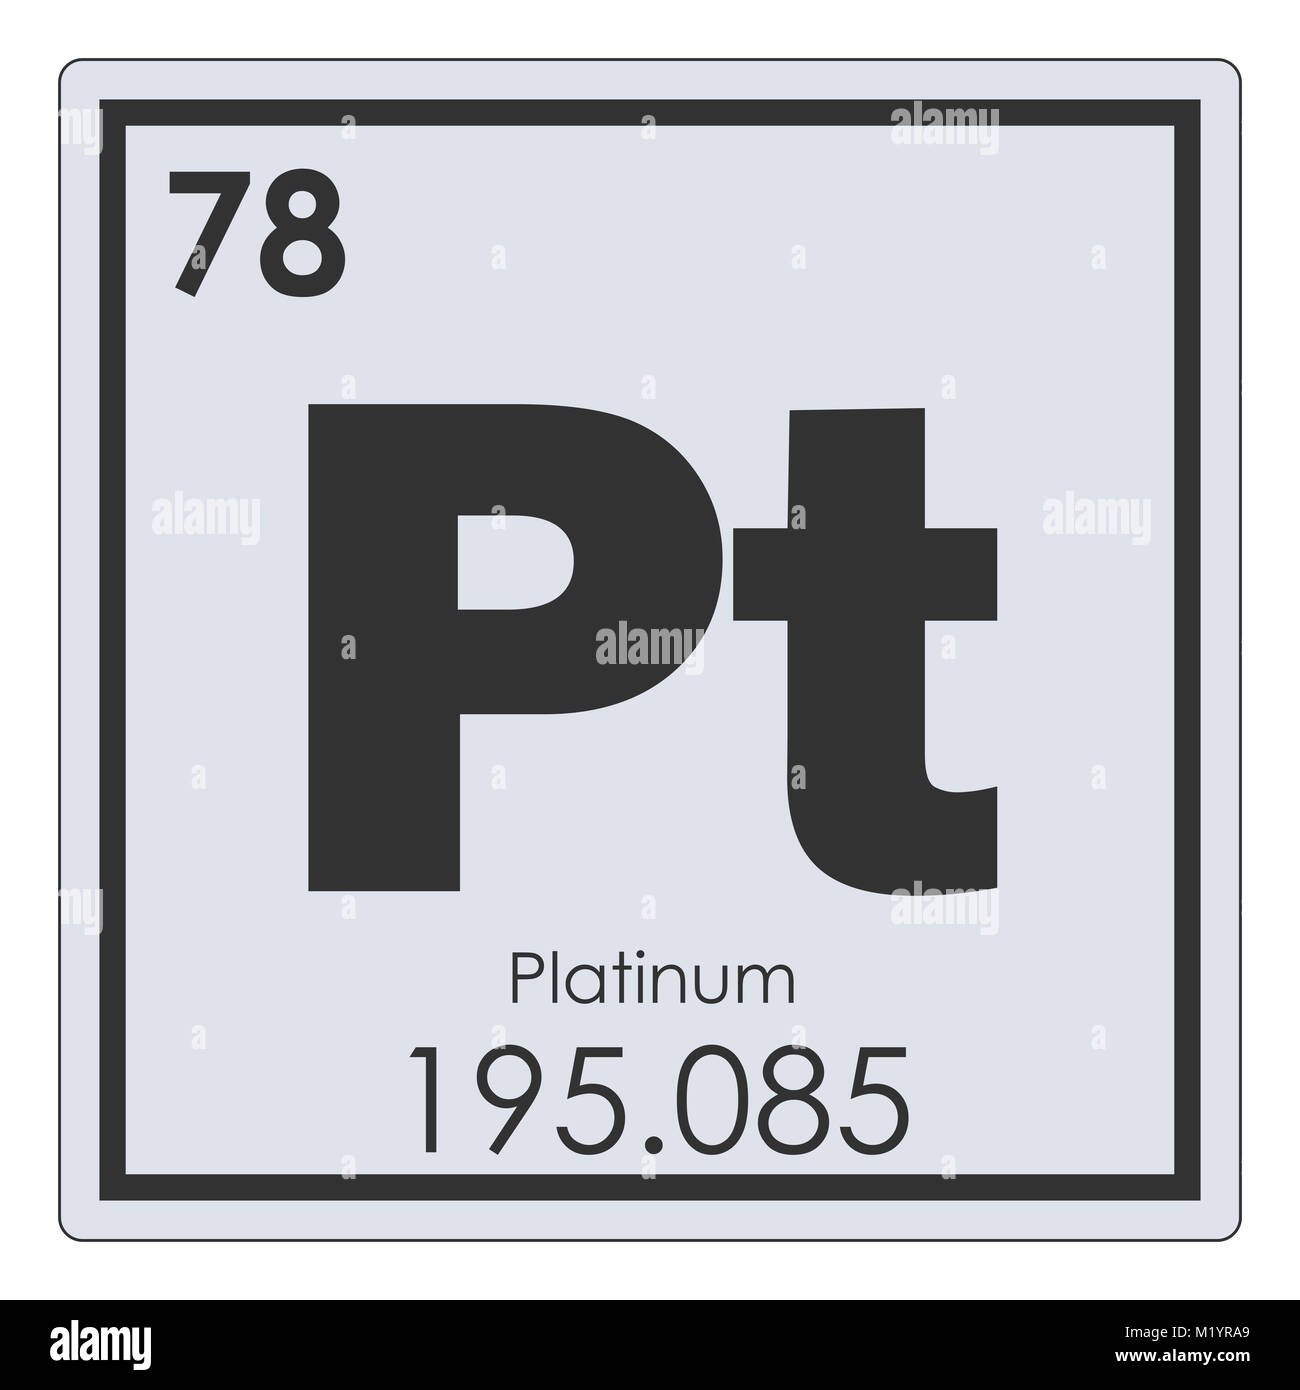 Platin chemische Element Periodensystem Wissenschaft Symbol Stockfotografie  - Alamy